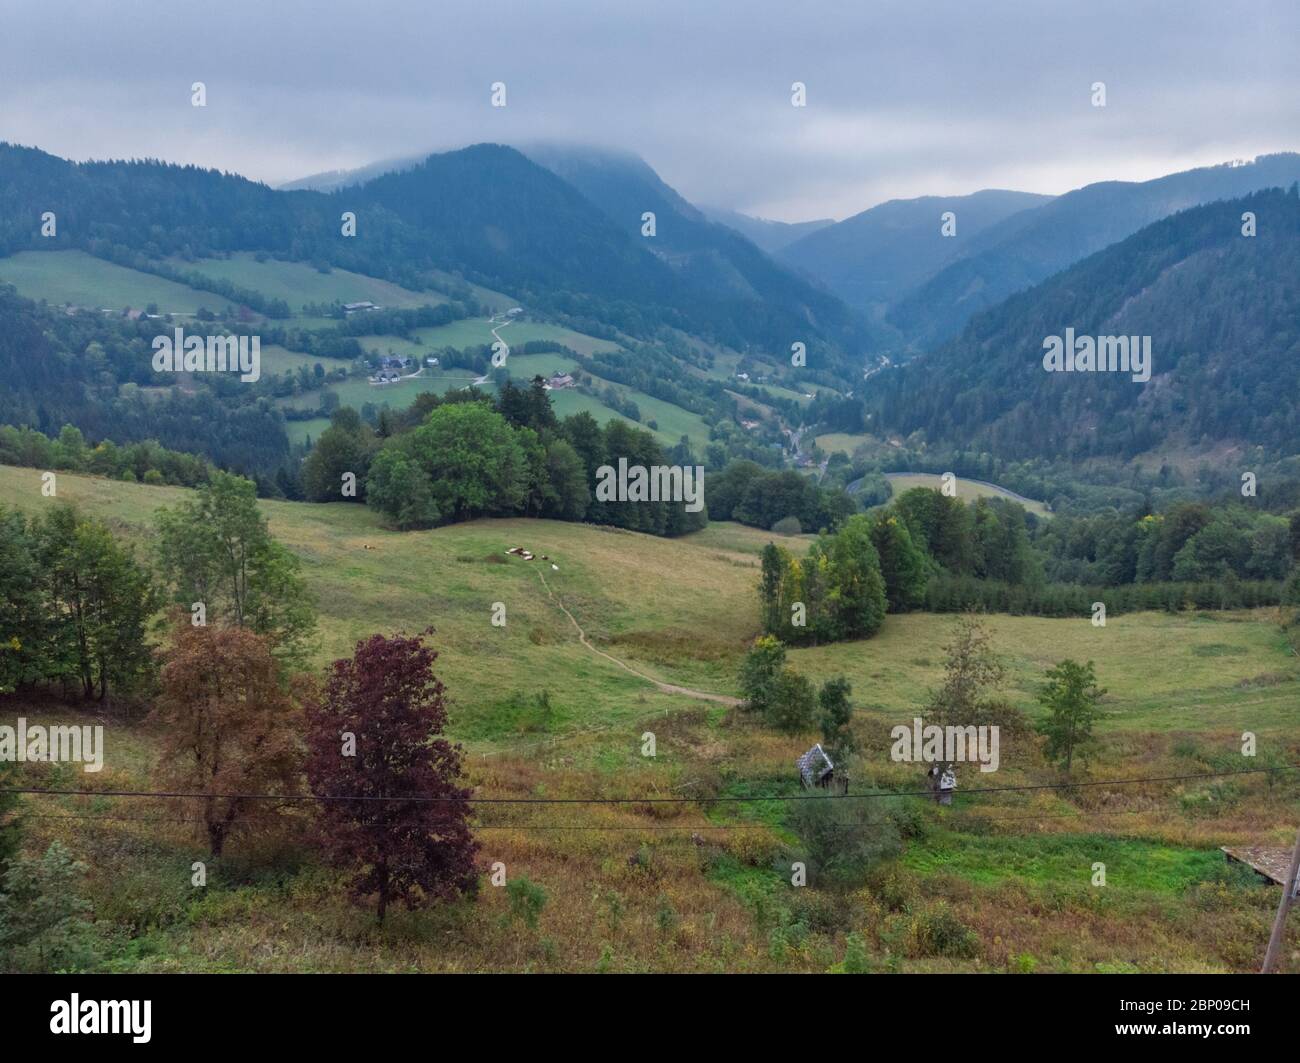 Splendida vista panoramica sulle colline e sulle montagne vicino alla città di Annaberg, in bassa Austria. Foto dall'alto scattata sul drone. Foto Stock